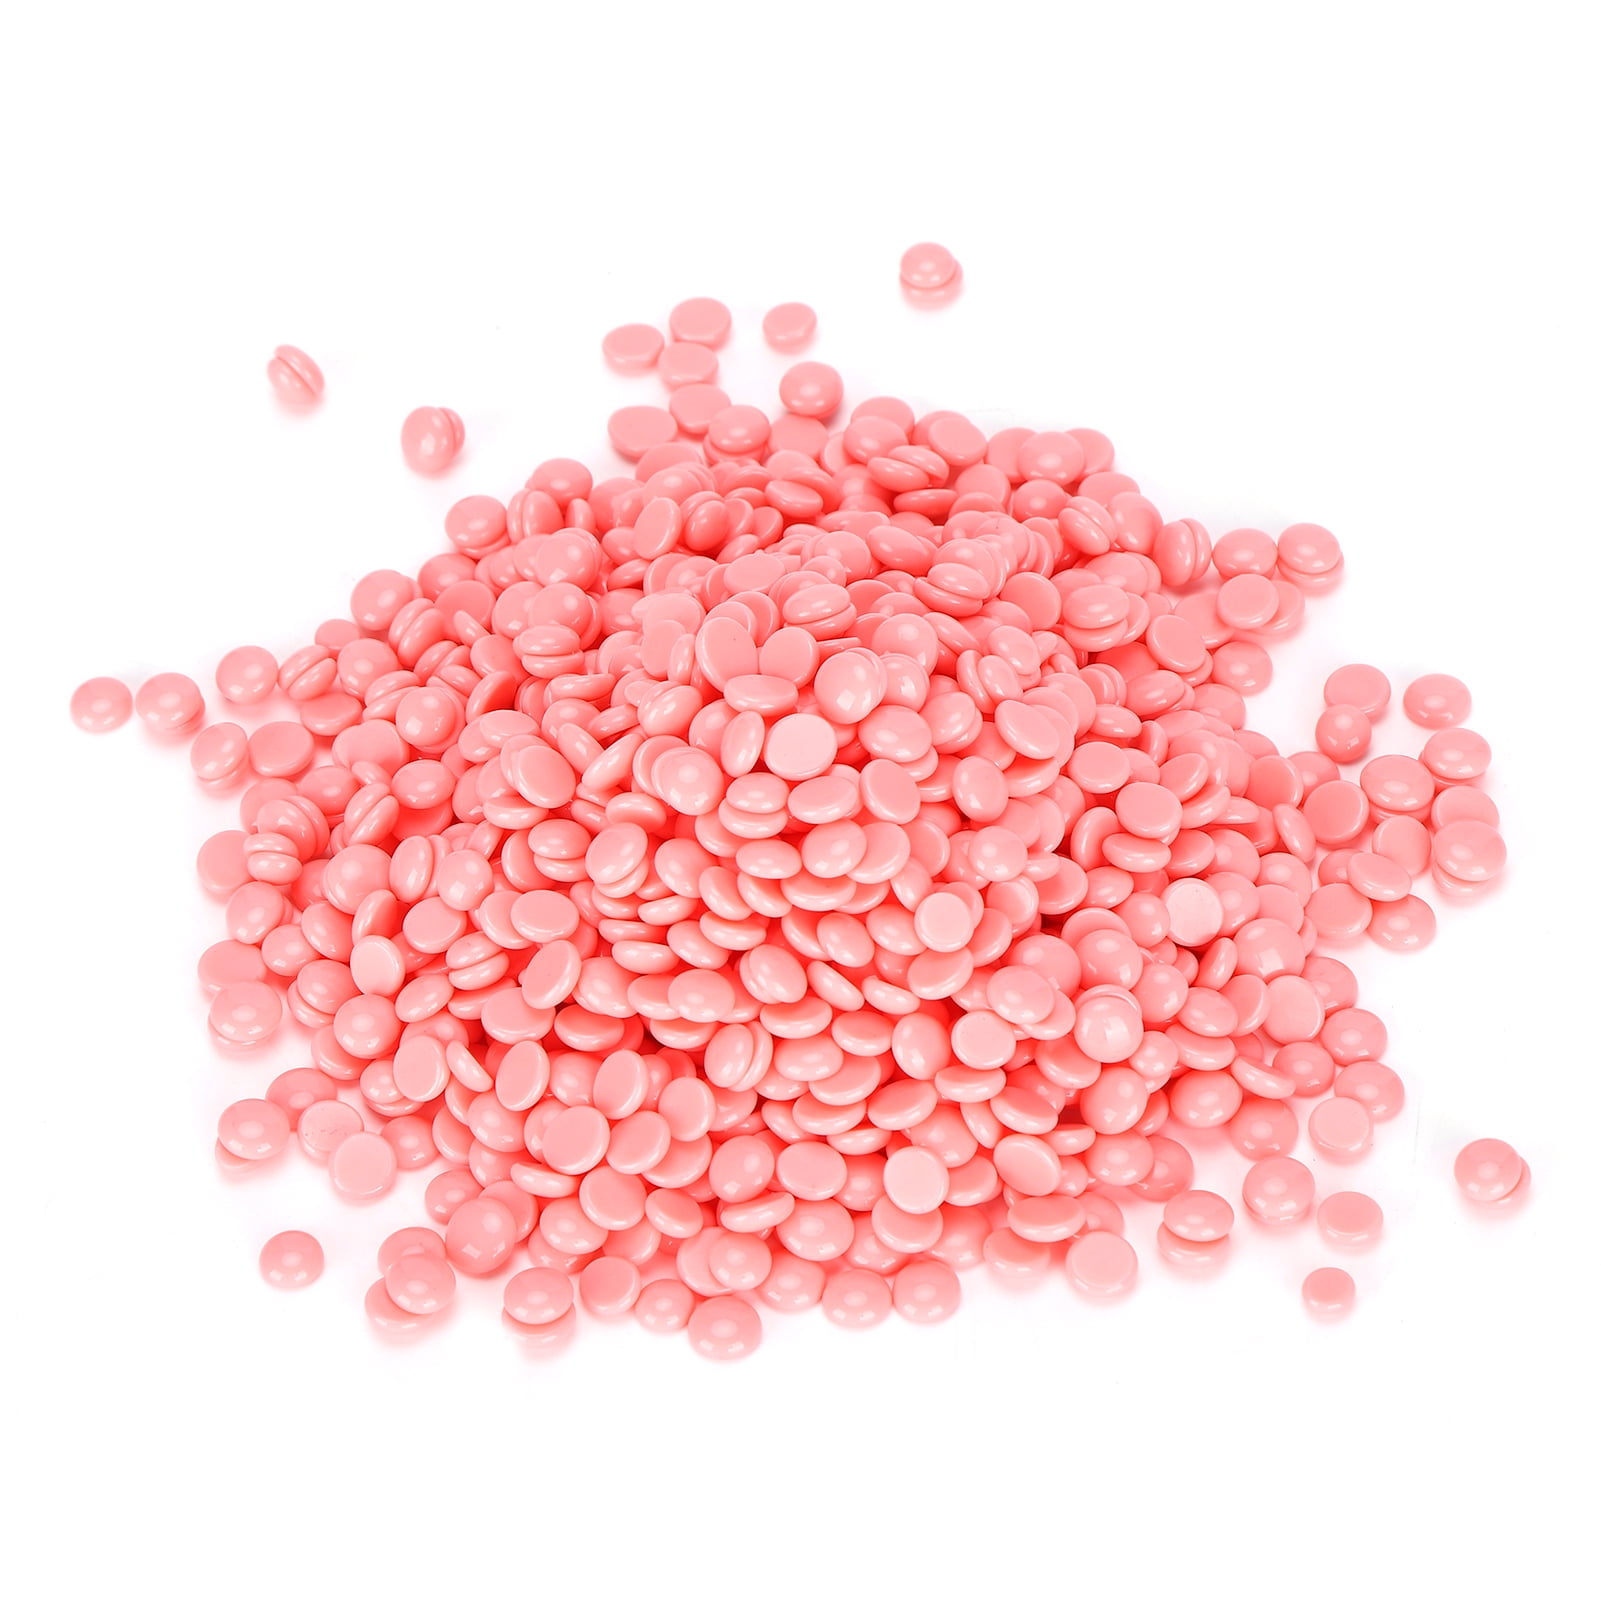 Wax Beads Scooper Pink 16 Oz